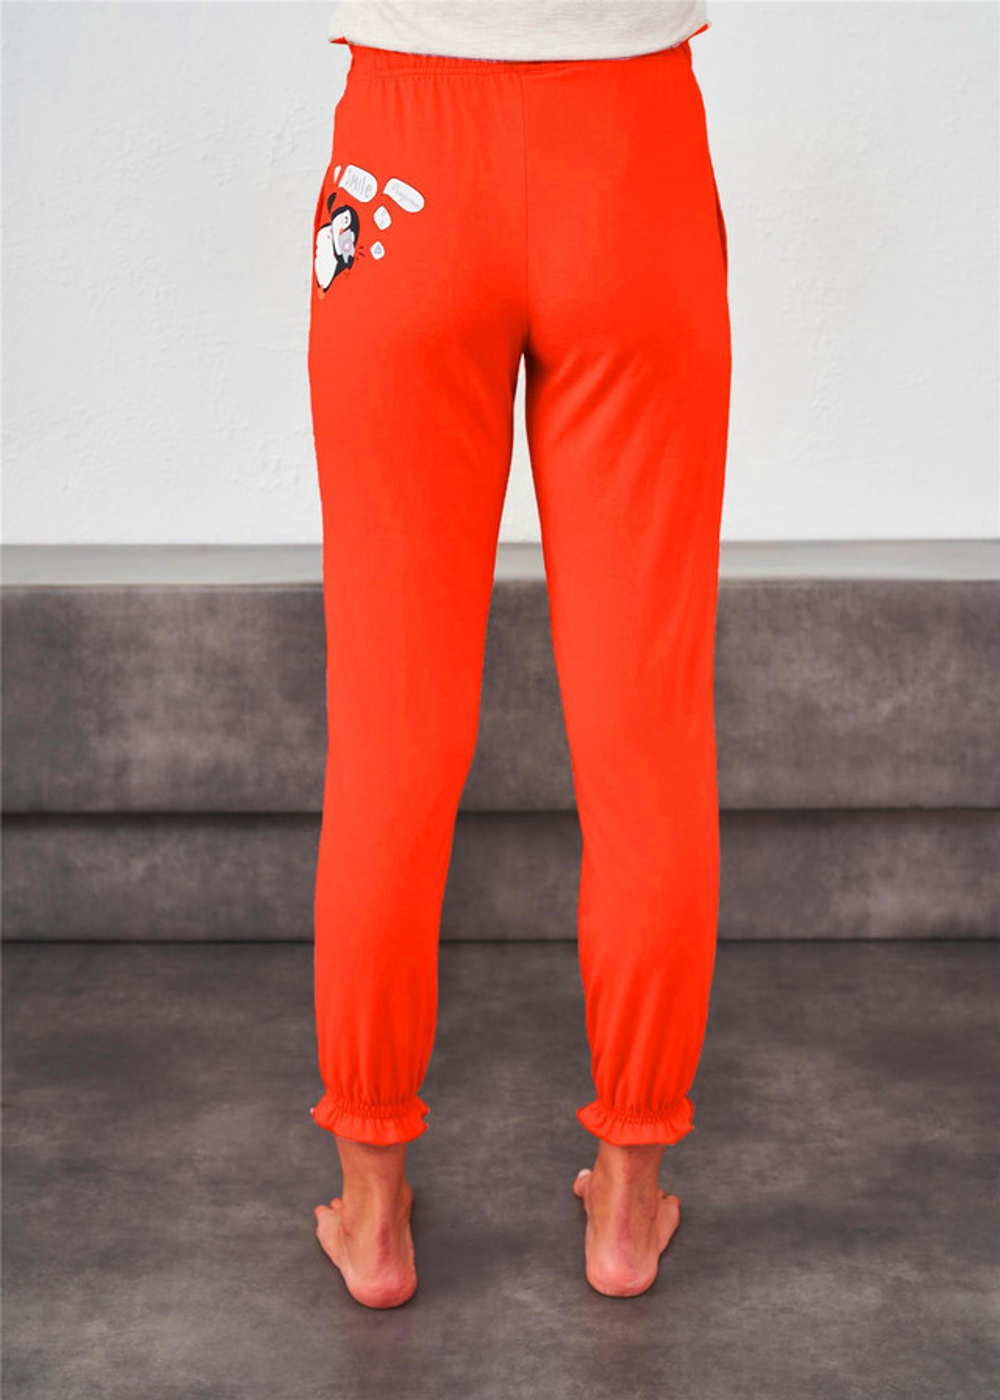 RELAX MODE / Пижамные штаны женские хлопок домашняя одежда - 09166